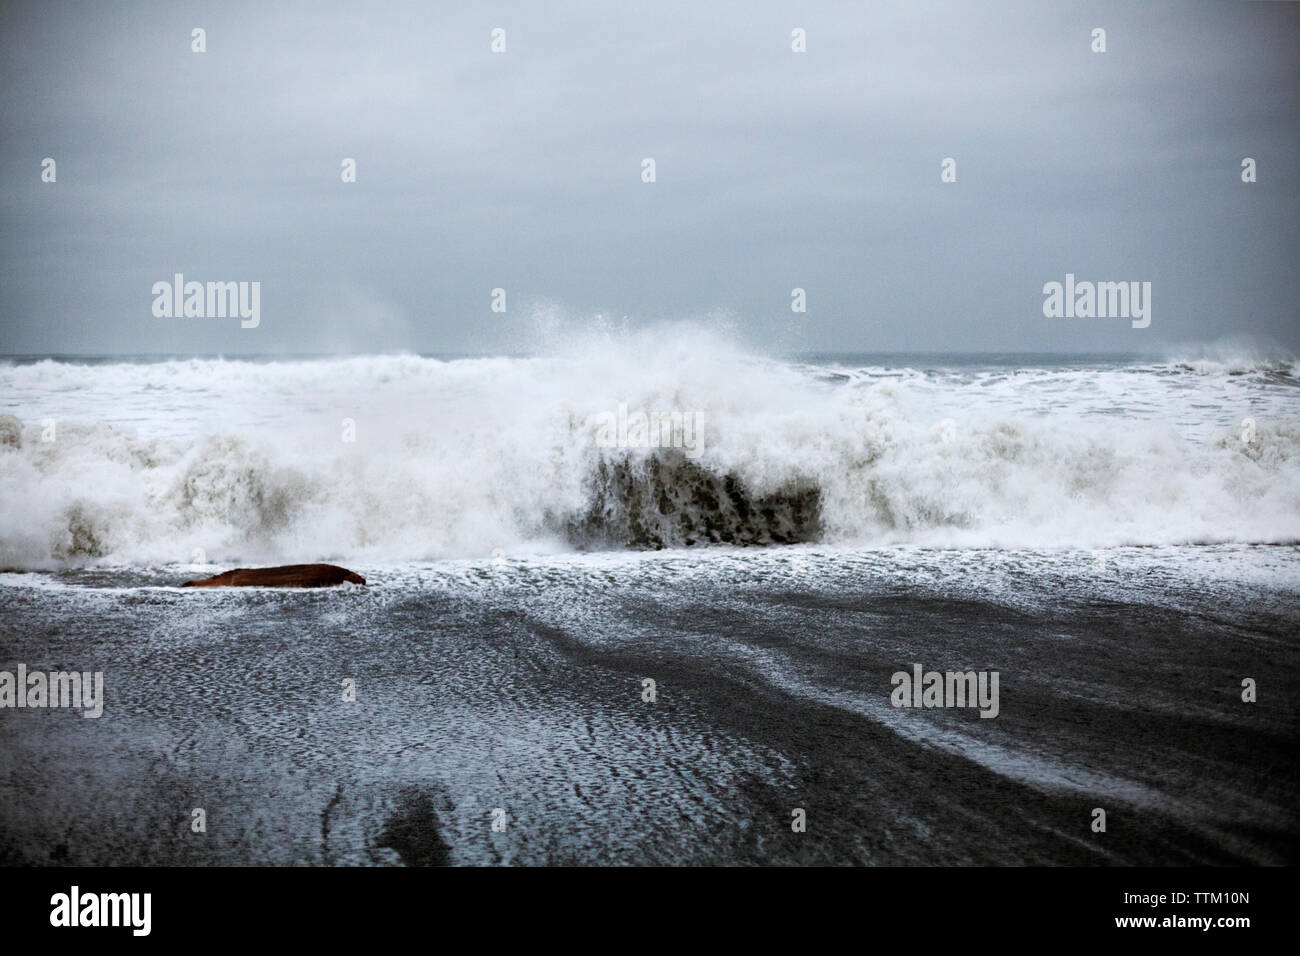 Waves crashing on shore against sky Stock Photo